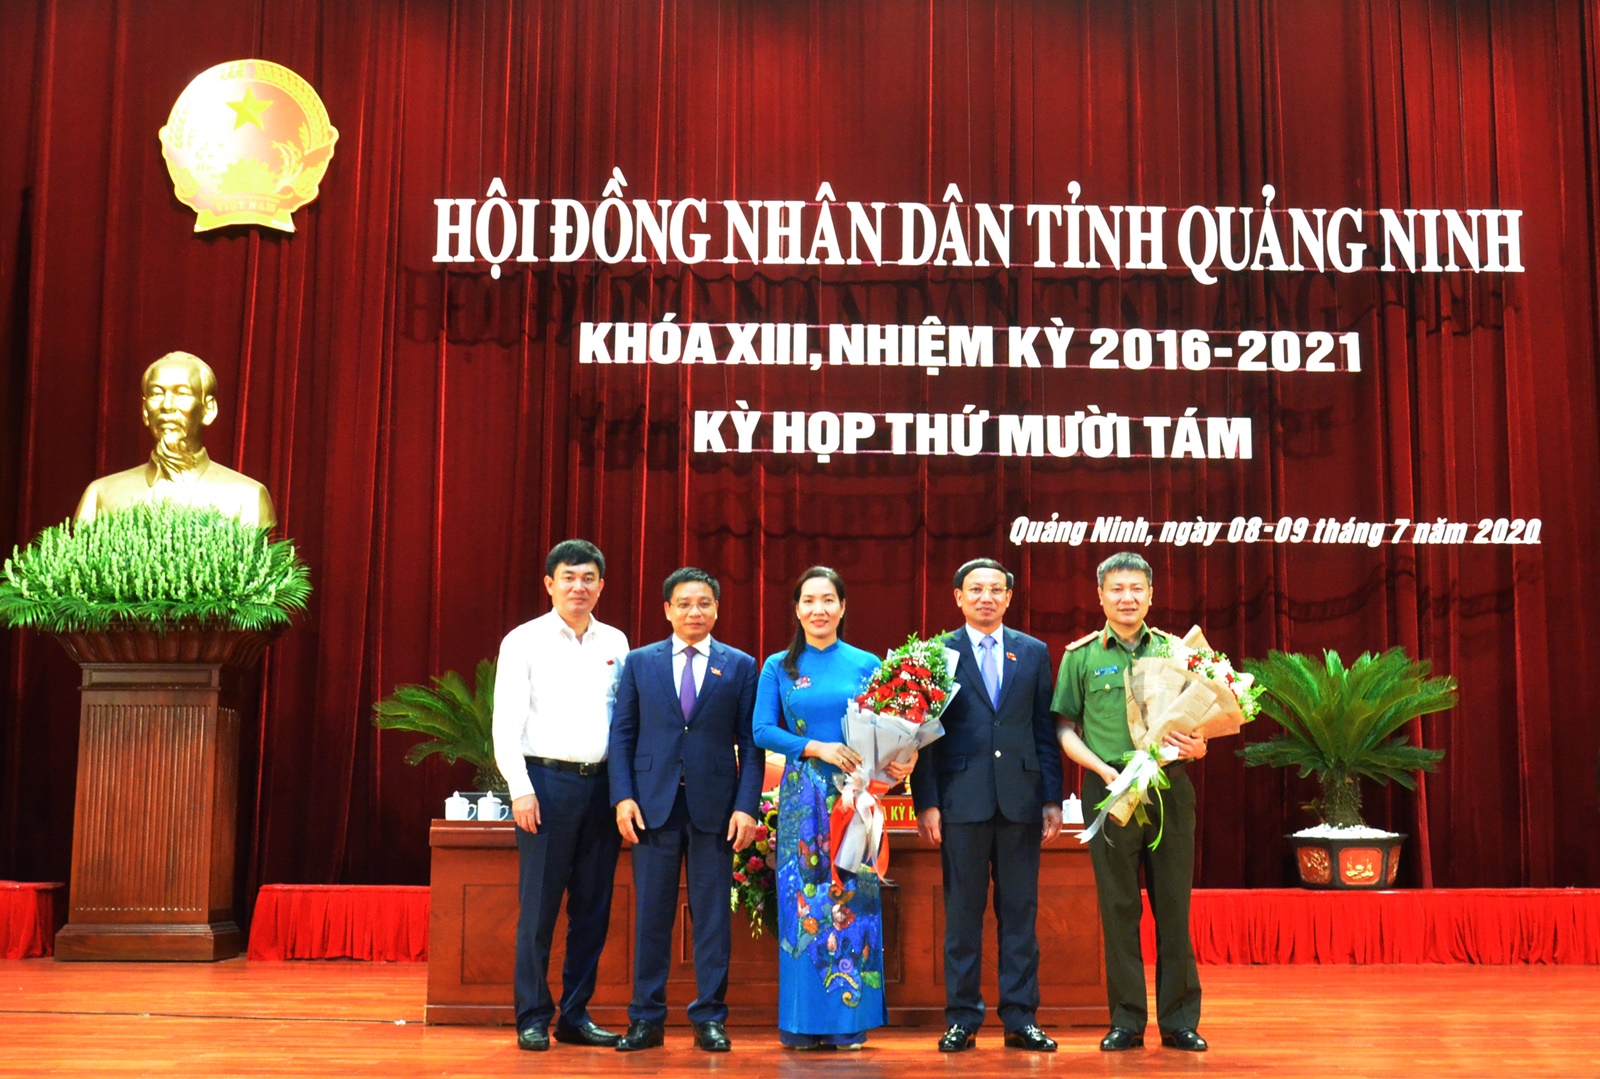 Giám đốc Sở VH&TT Nguyễn Thị Hạnh được bầu giữ chức Phó Chủ tịch UBND tỉnh